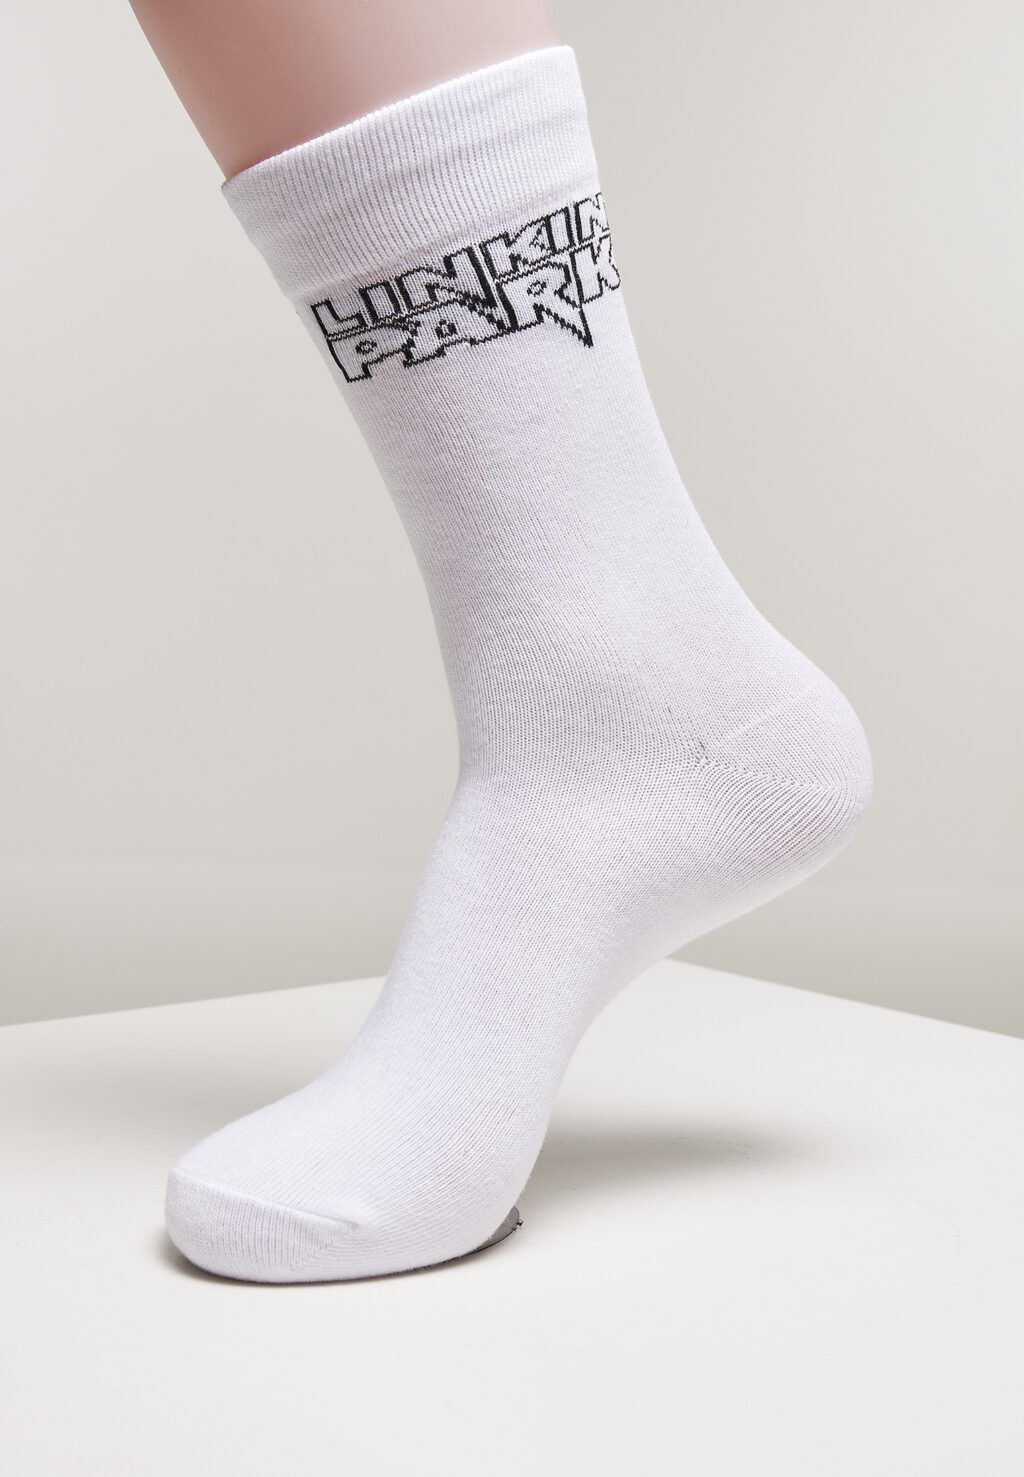 Linkin Park Socks 2-Pack black/white MC610